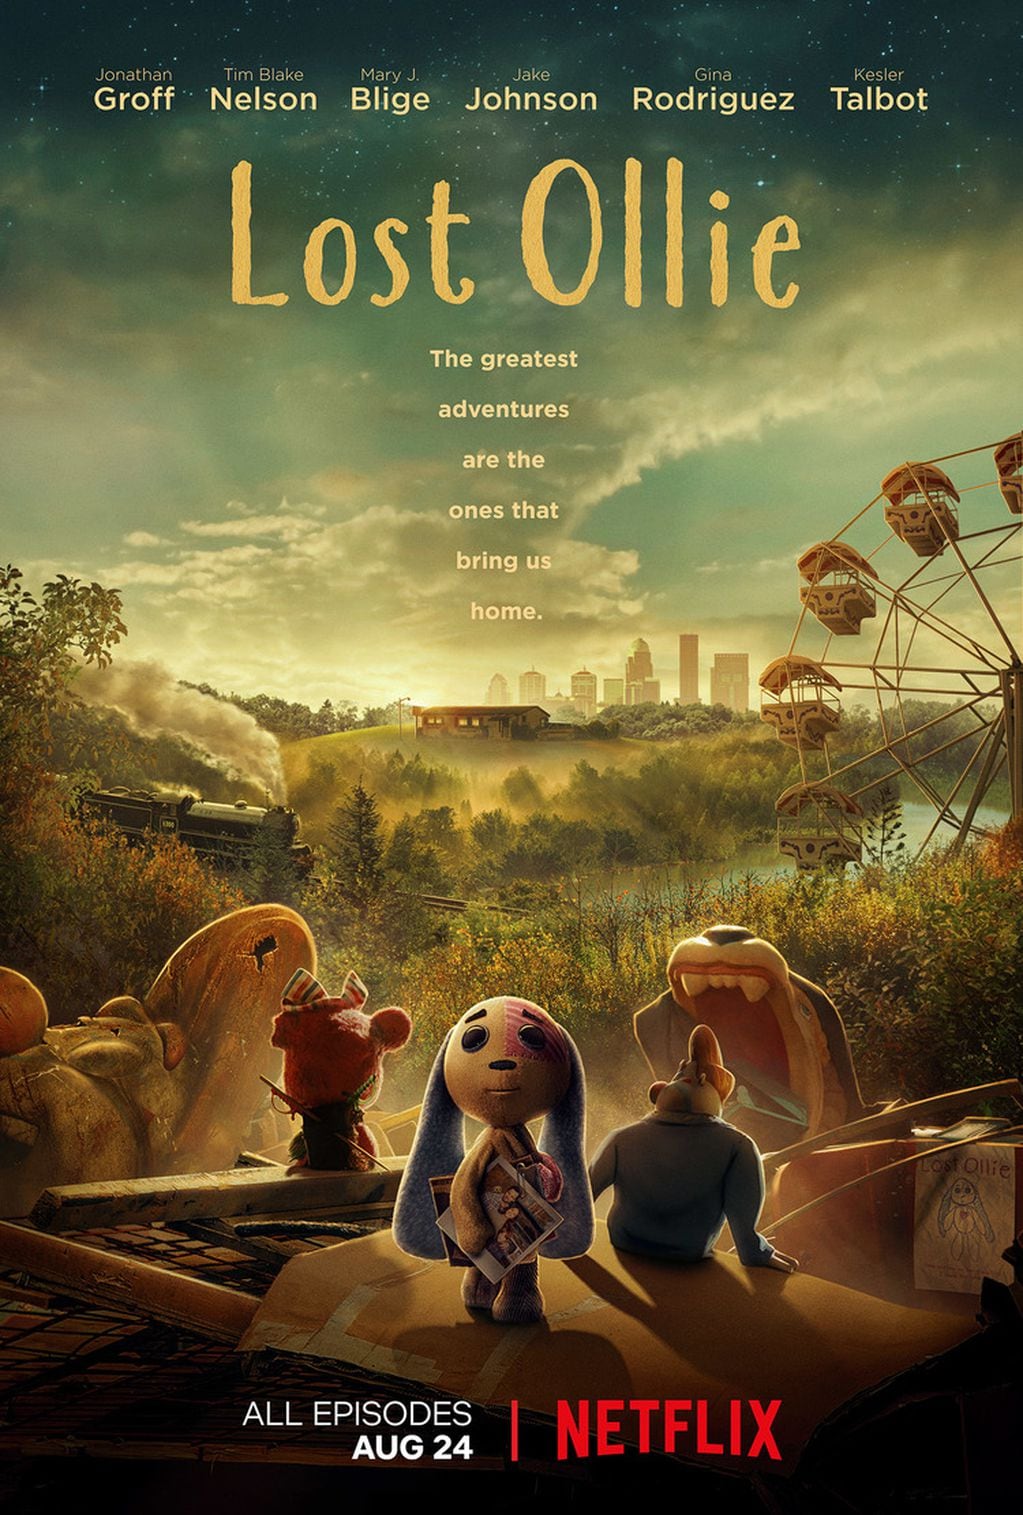 Lost Ollie la miniserie dirigida y producida por Peter Ramsey.